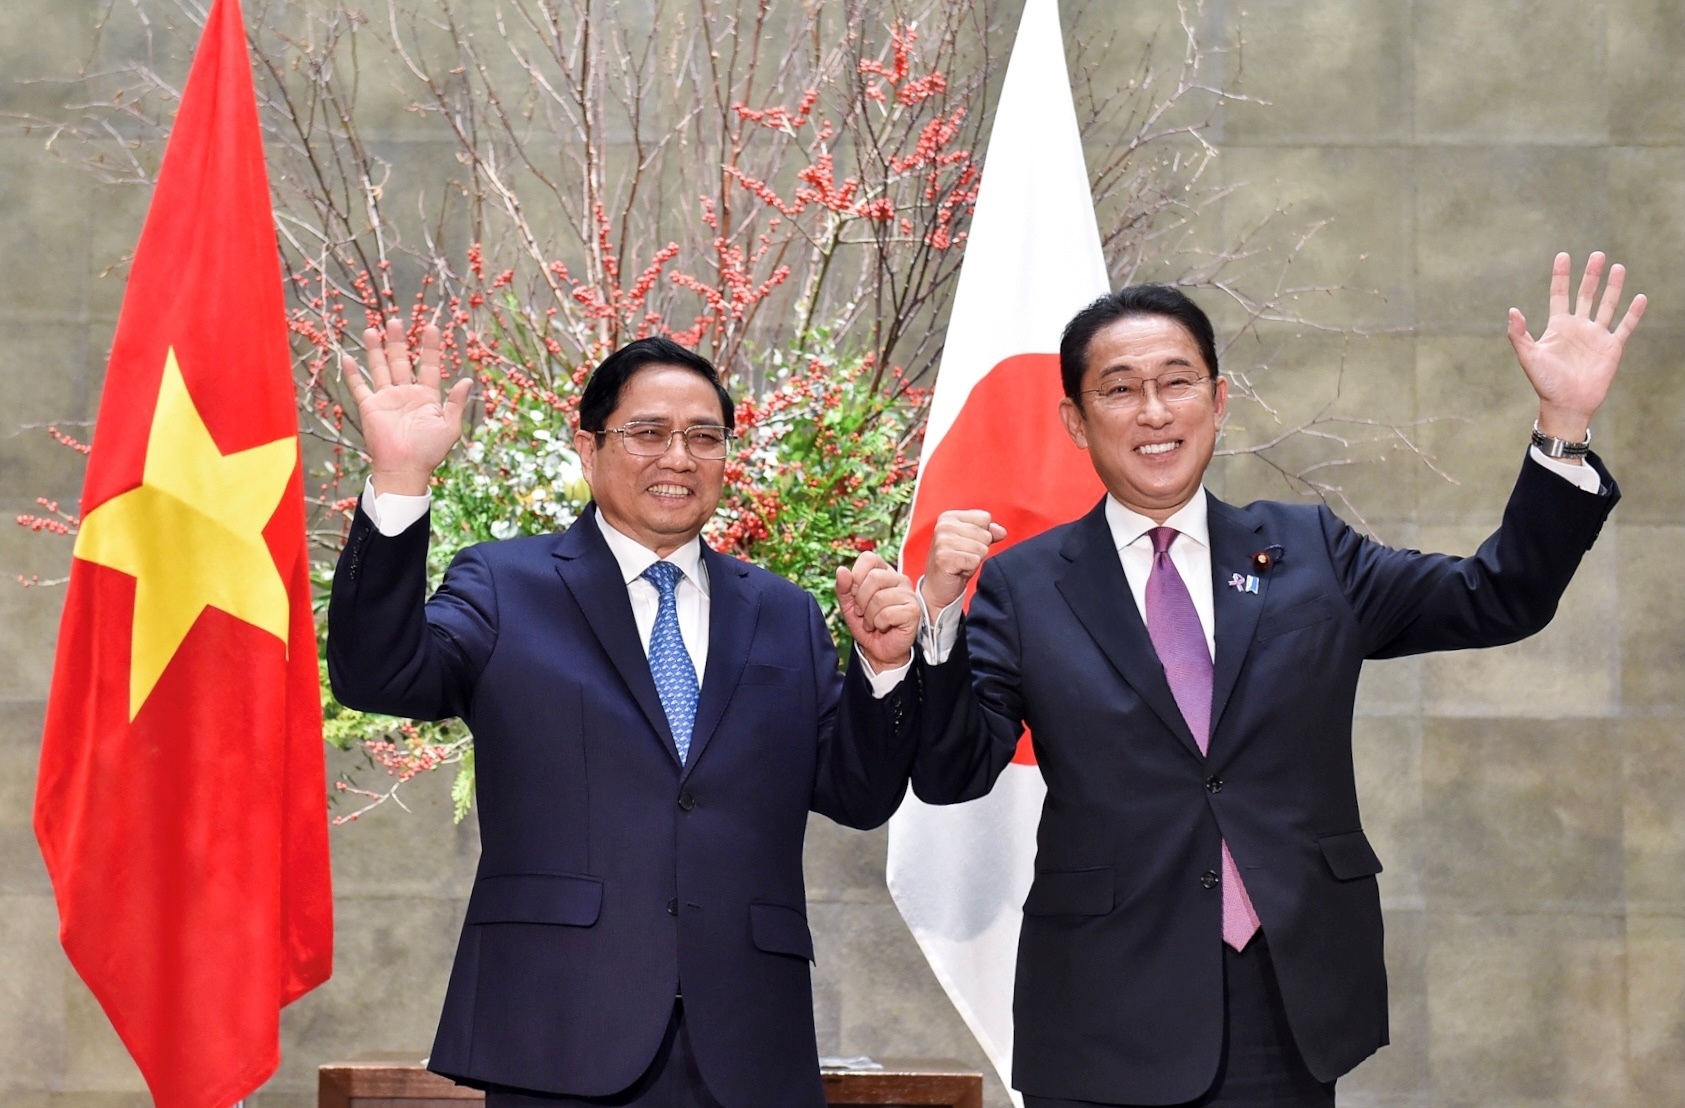 Thủ tướng lên đường tới Nhật Bản dự Hội nghị Thượng đỉnh G7 mở rộng - 2